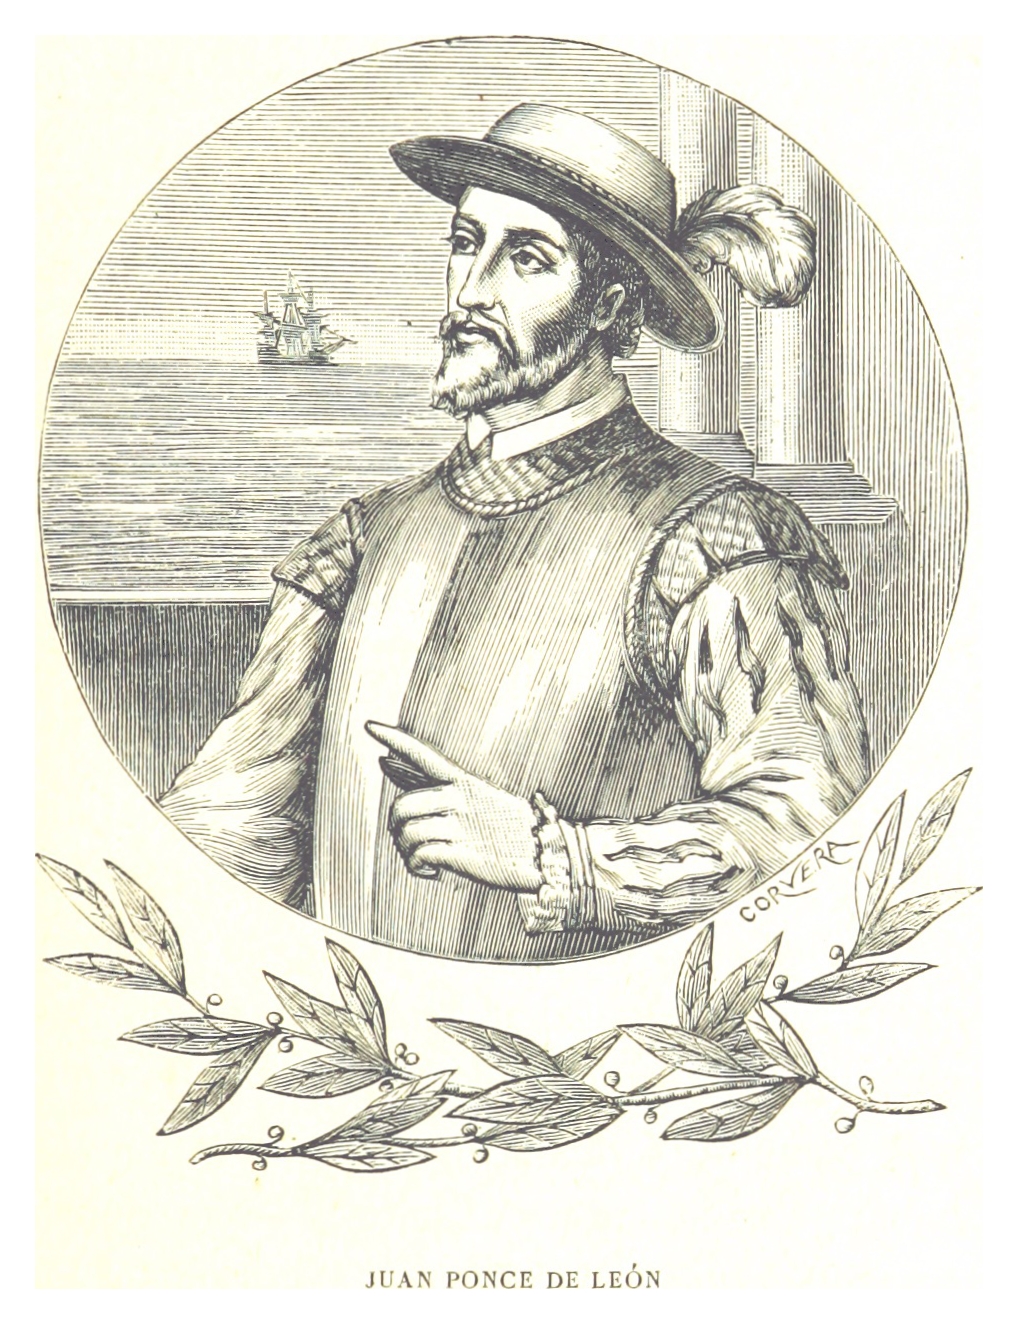  Artist's depiction of [[Juan Ponce de León